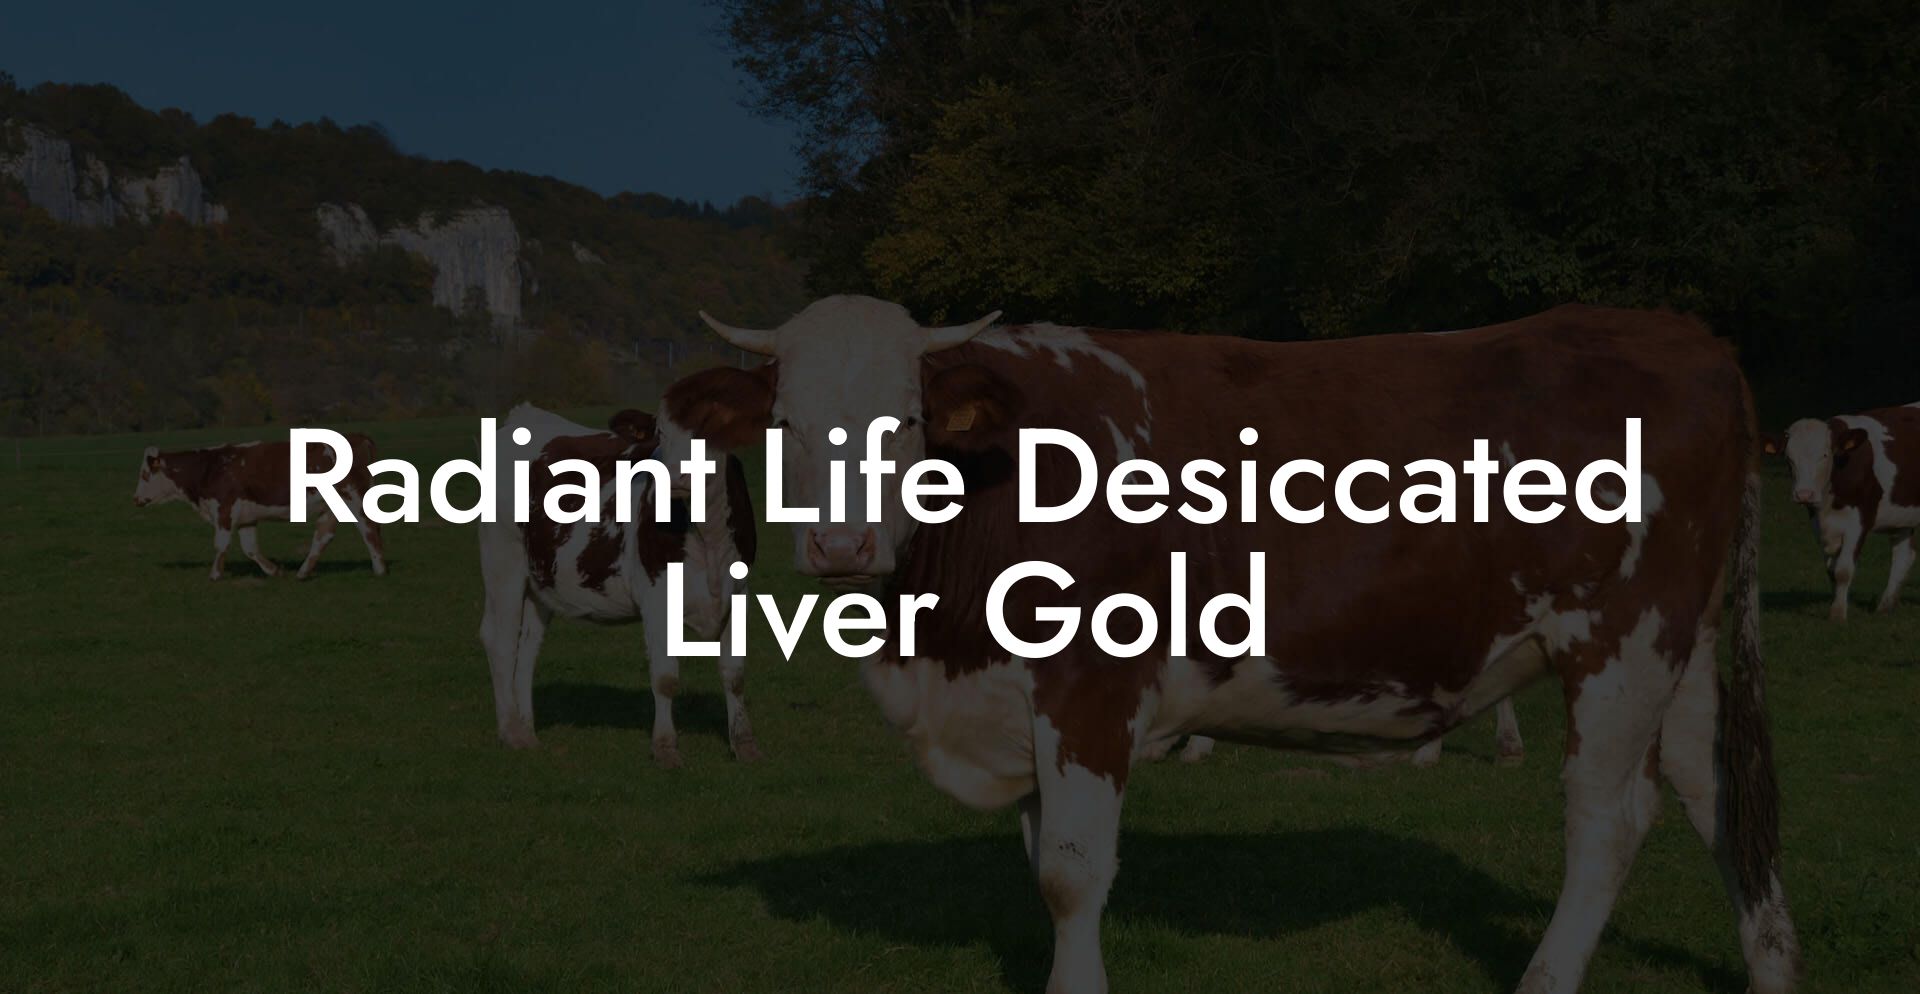 Radiant Life Desiccated Liver Gold